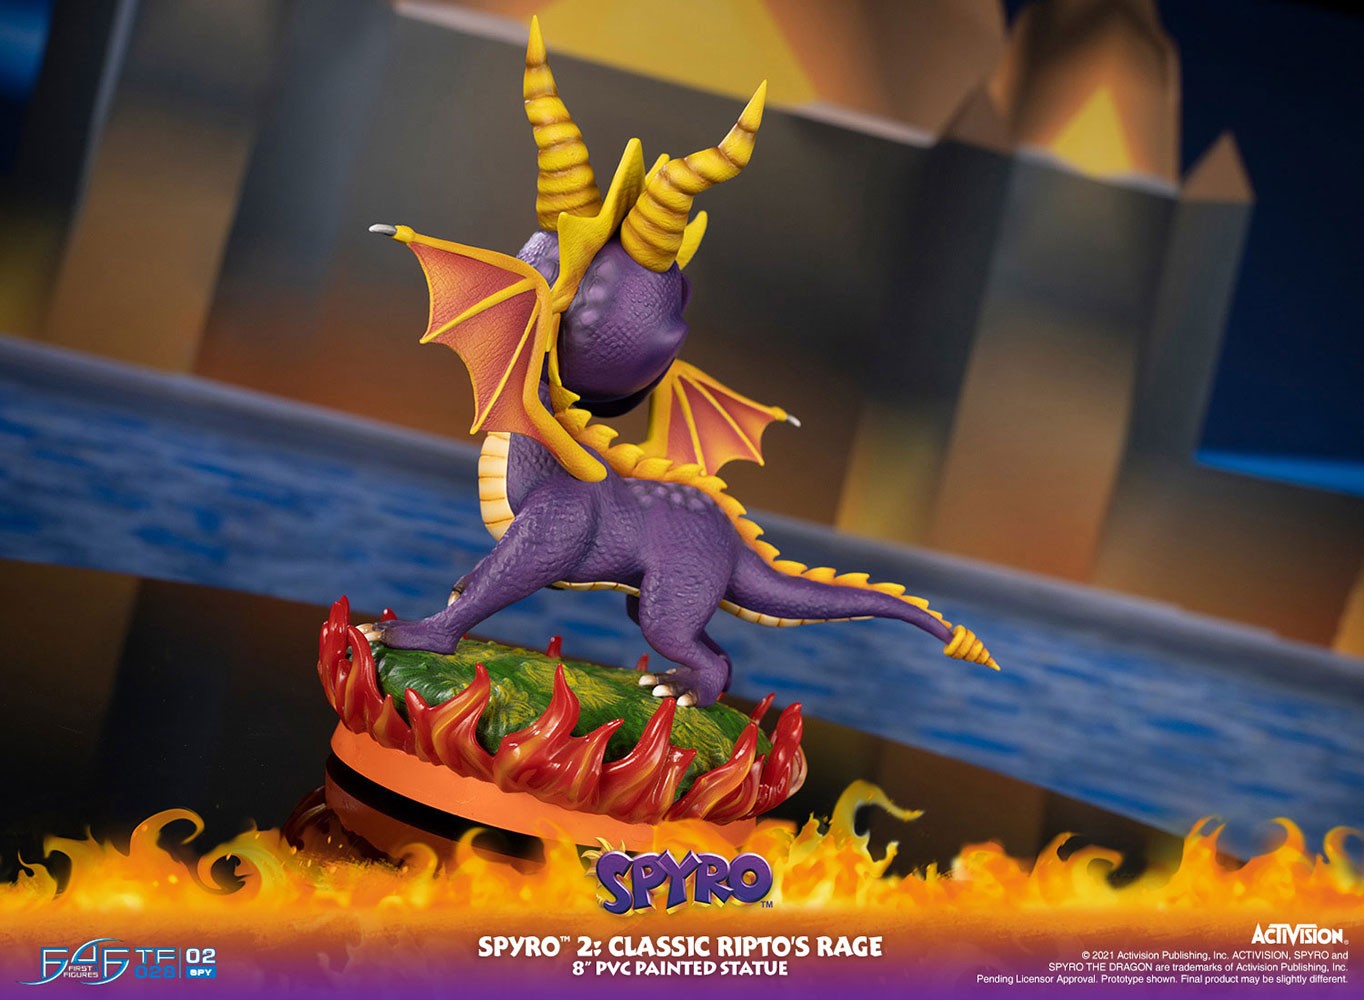 Spyro 2: Classic Ripto's Rage